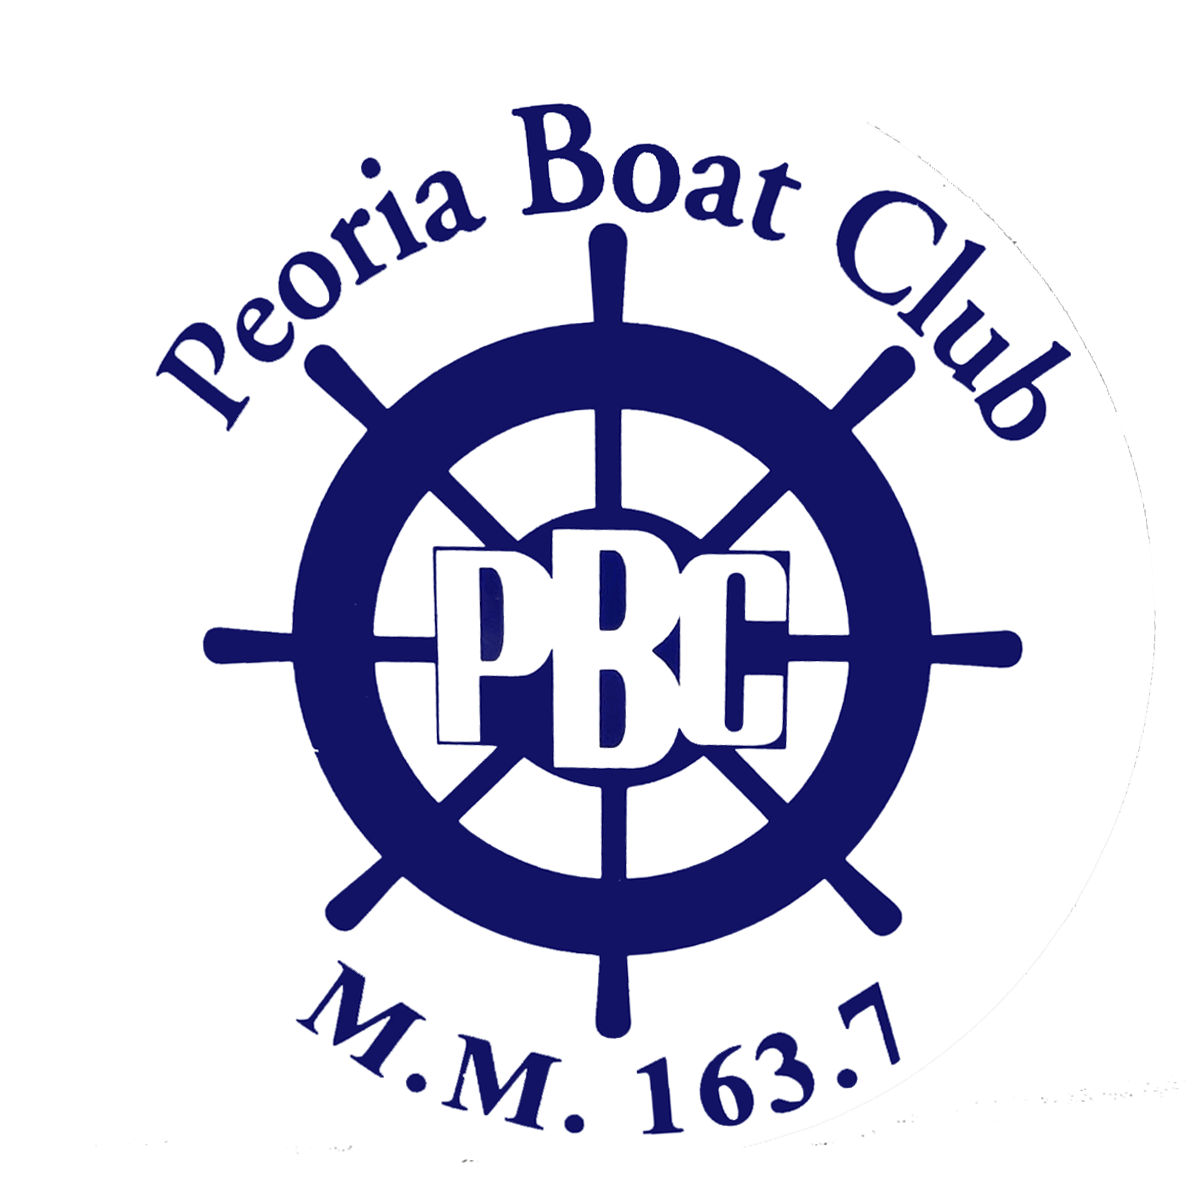 Peoria Boat Club